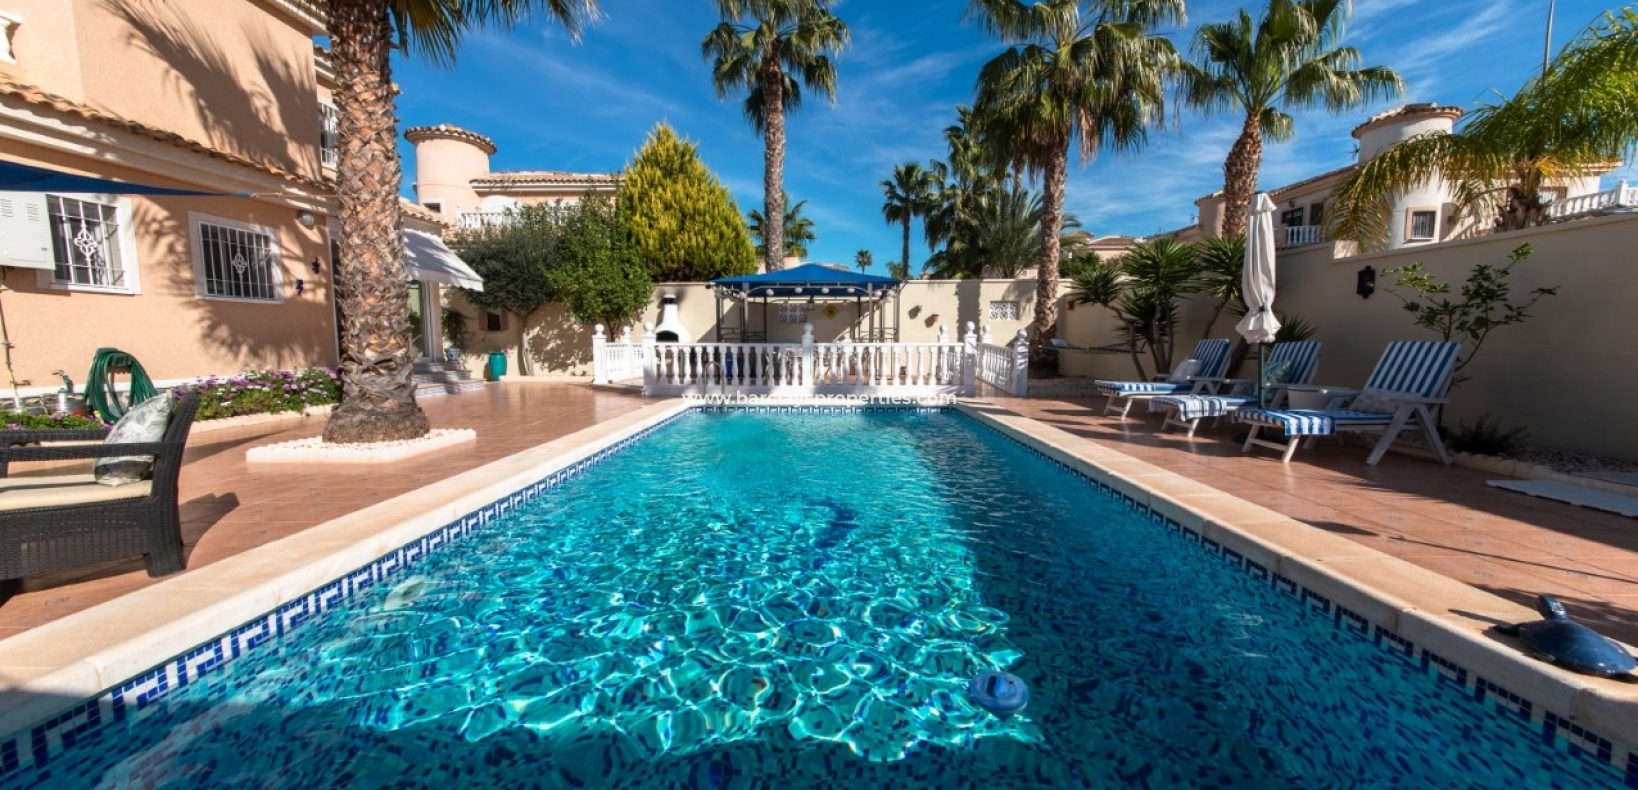 Schwimmbad - Villa zum Verkauf in Urbanisierung La Marina Spanien